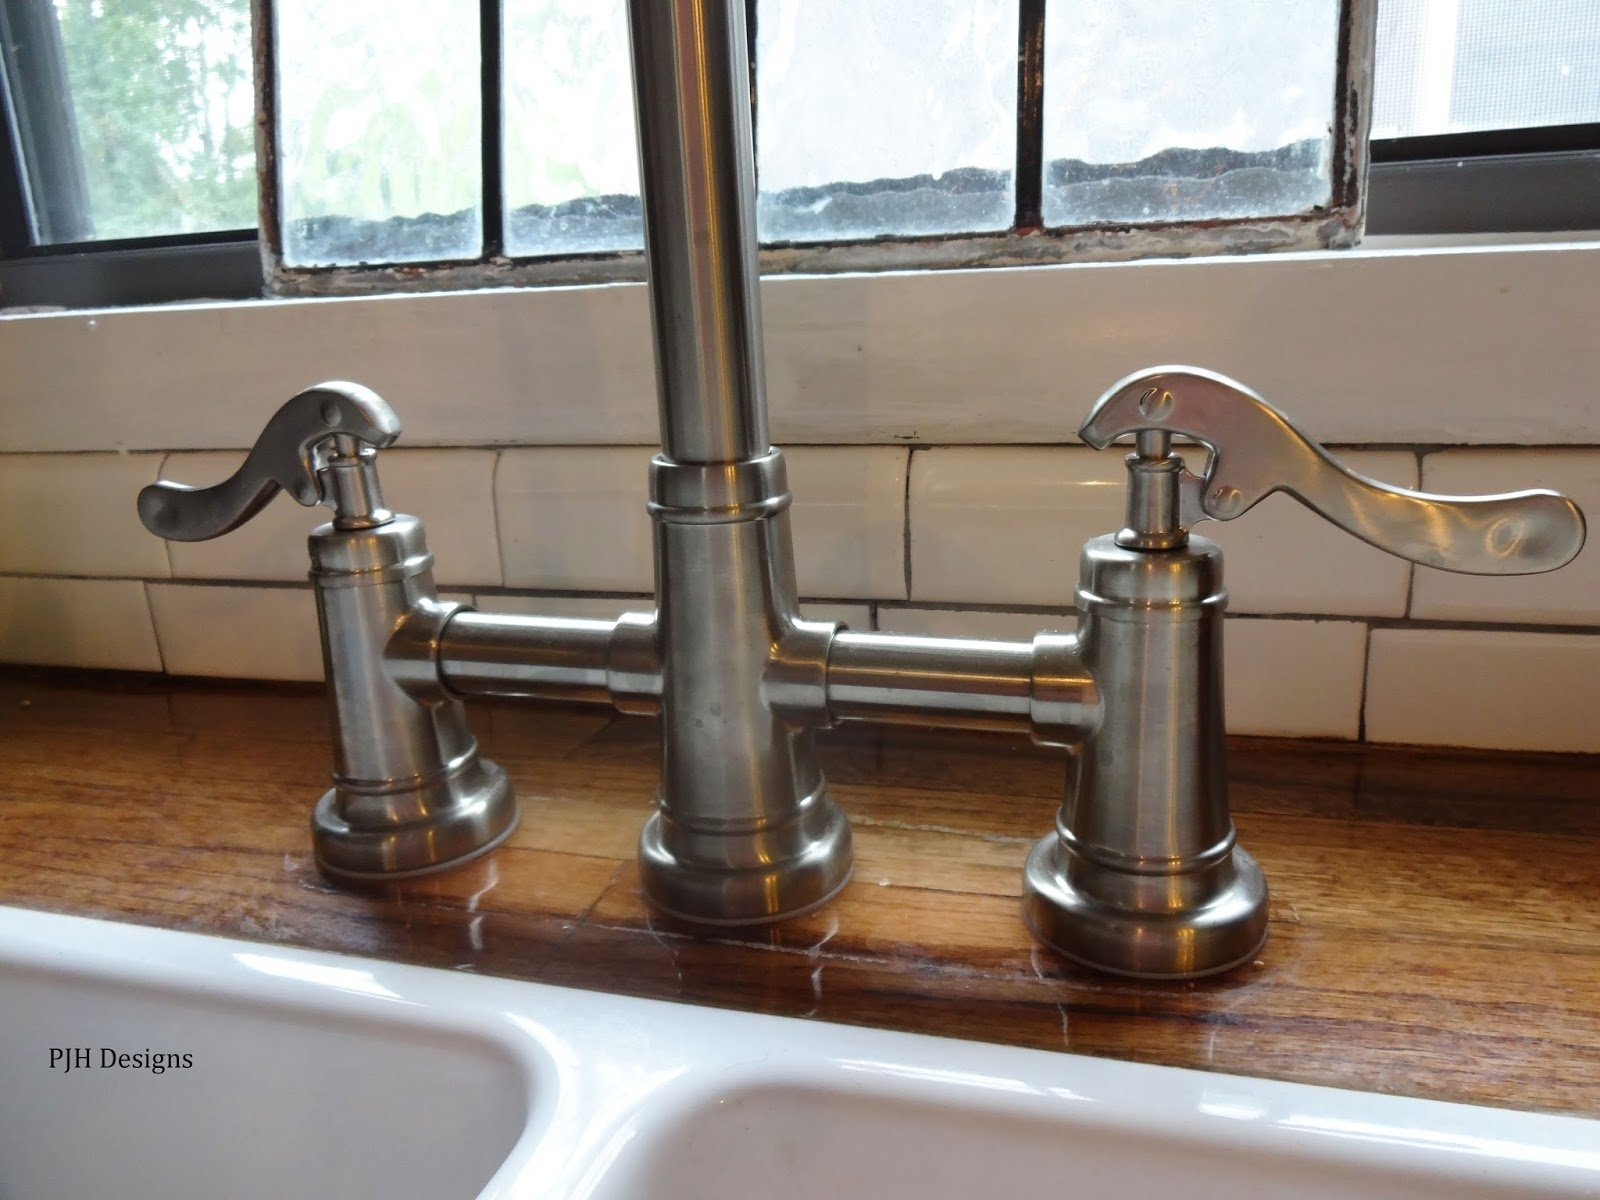 1970's kitchen sink faucet